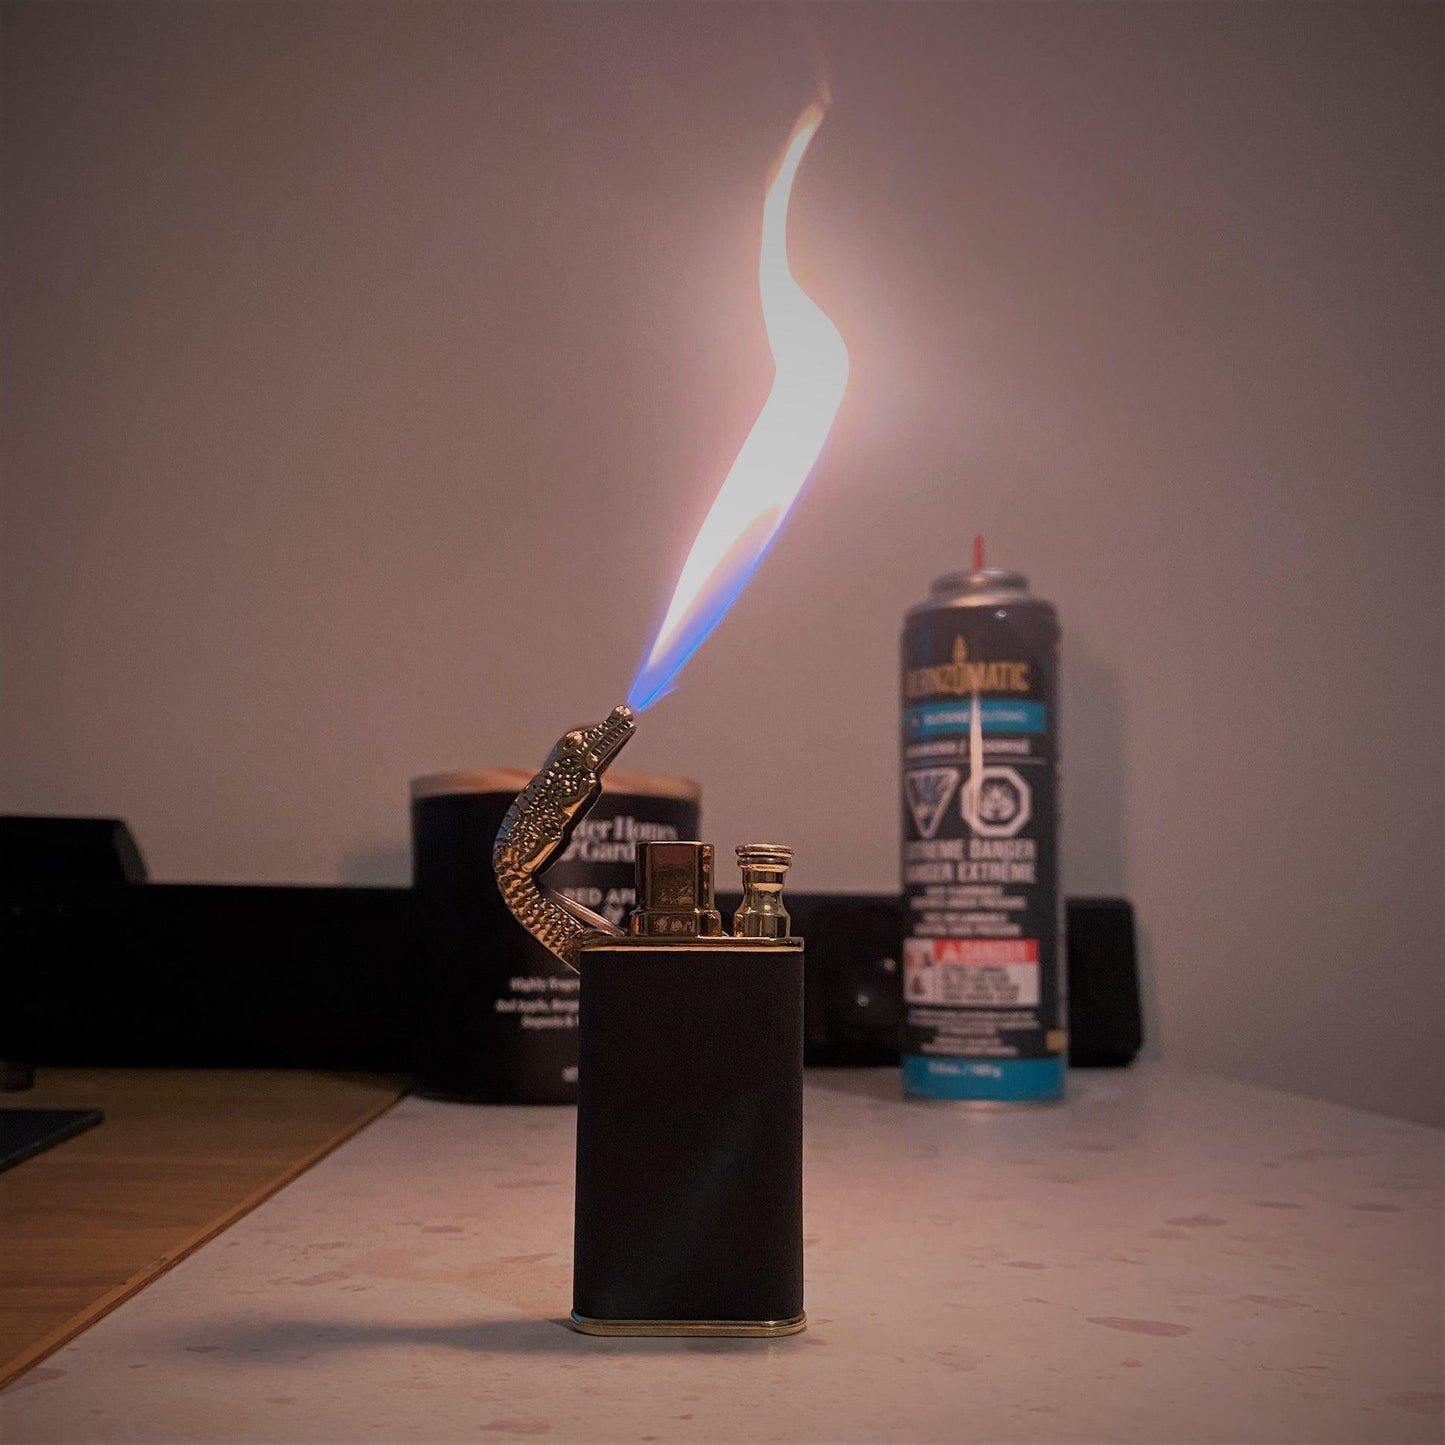 Cermal™ Dragon Lighter - CermalShop